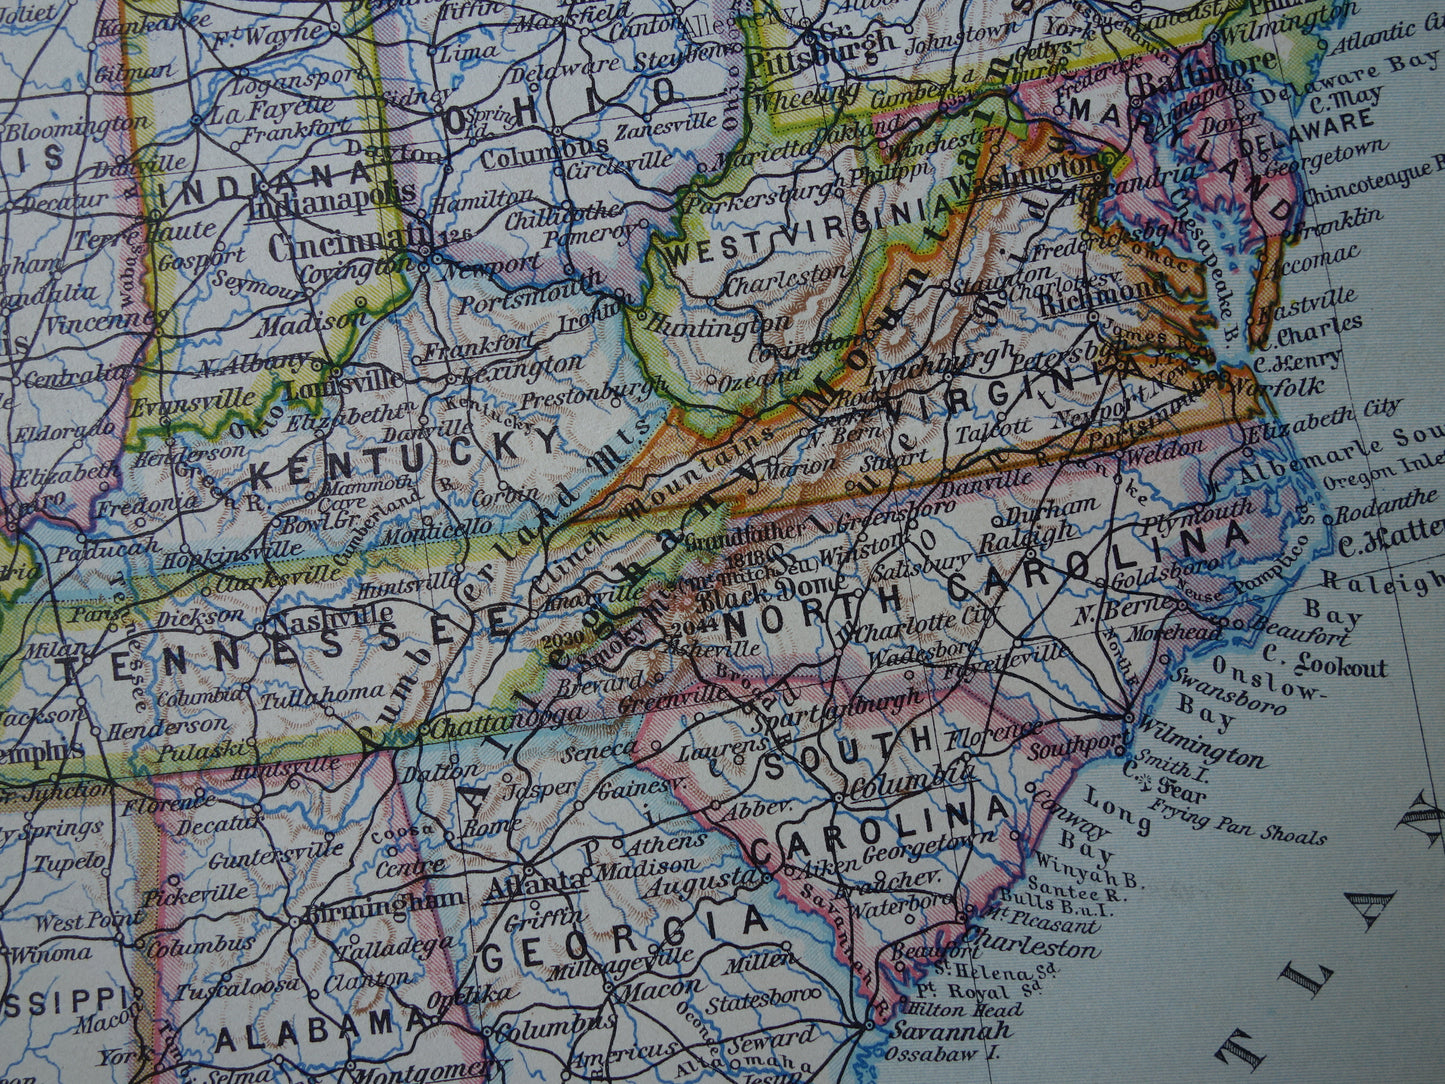 VERENIGDE STATEN set van twee kaarten uit 1928 Kleurrijke landkaart van de VS - originele vintage kaart landkaarten USA